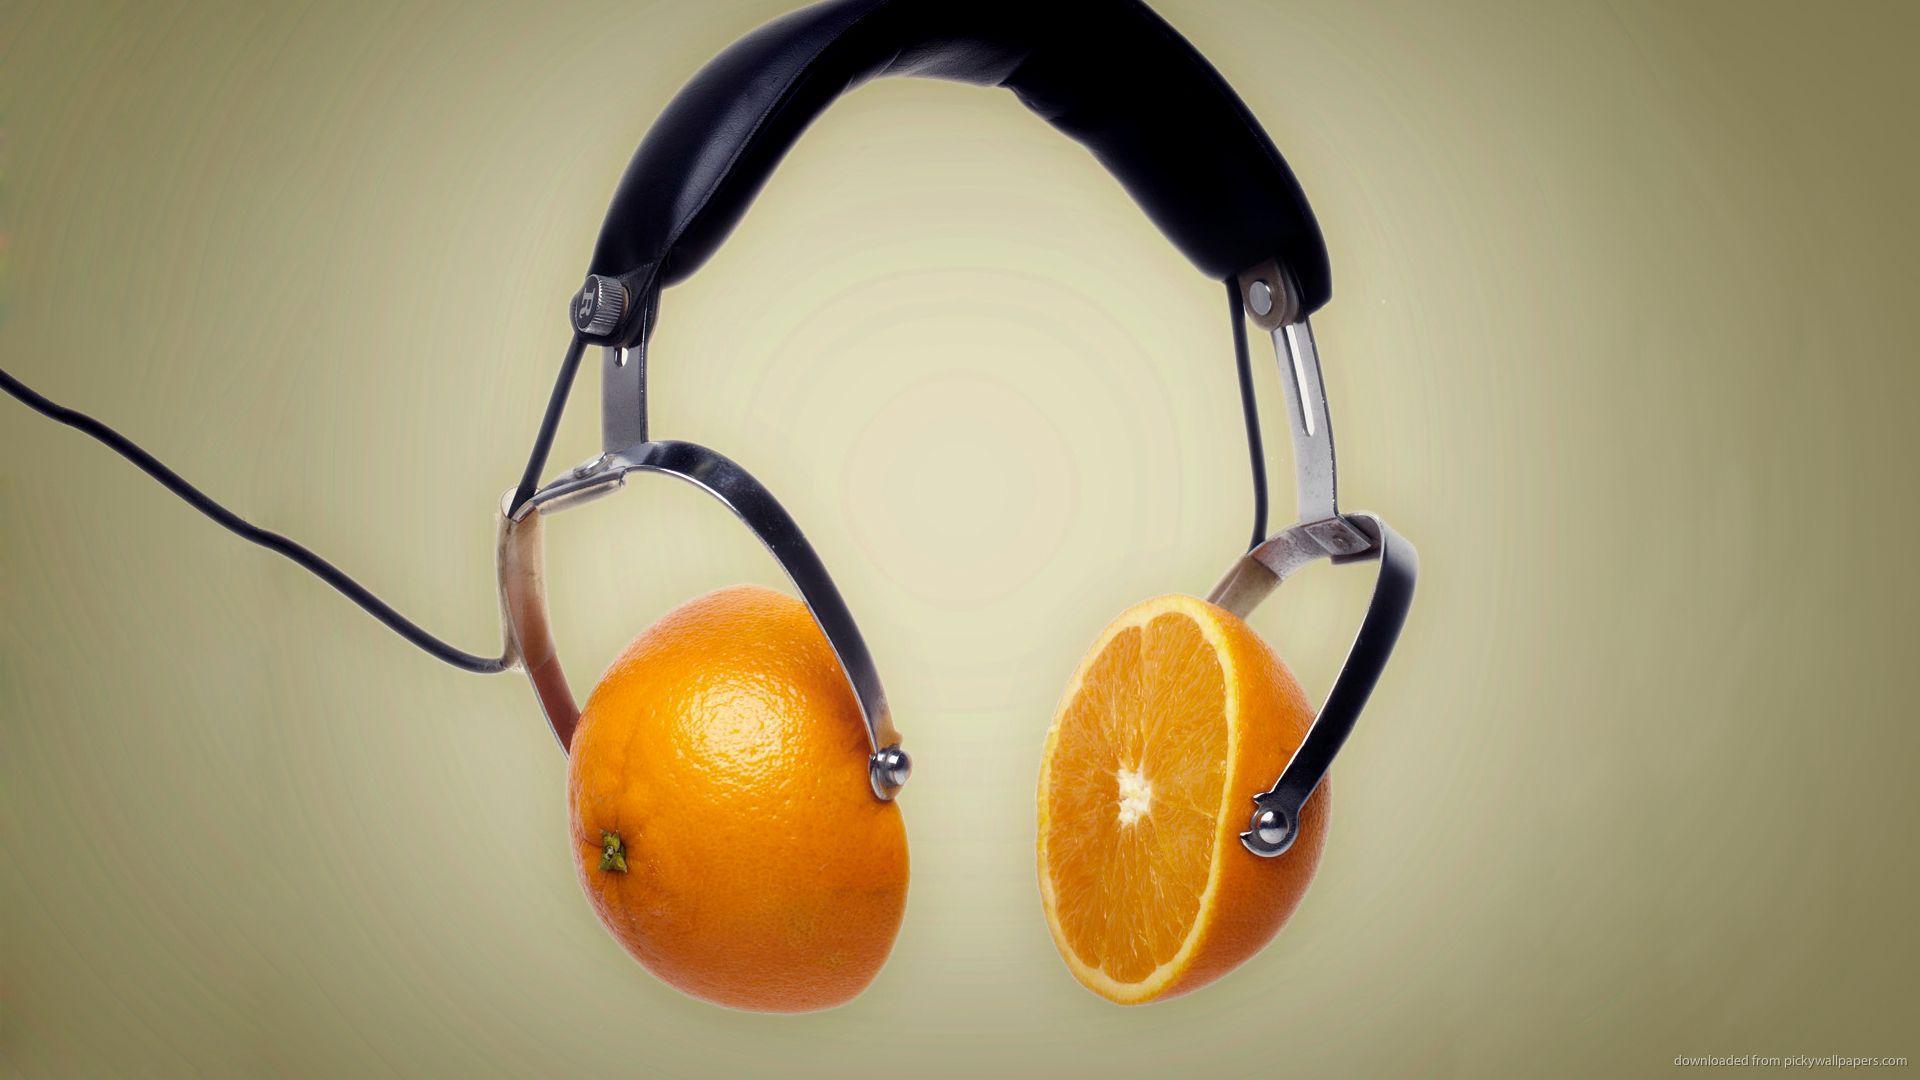 Download 1920x1080 Orange Headphones Wallpaper